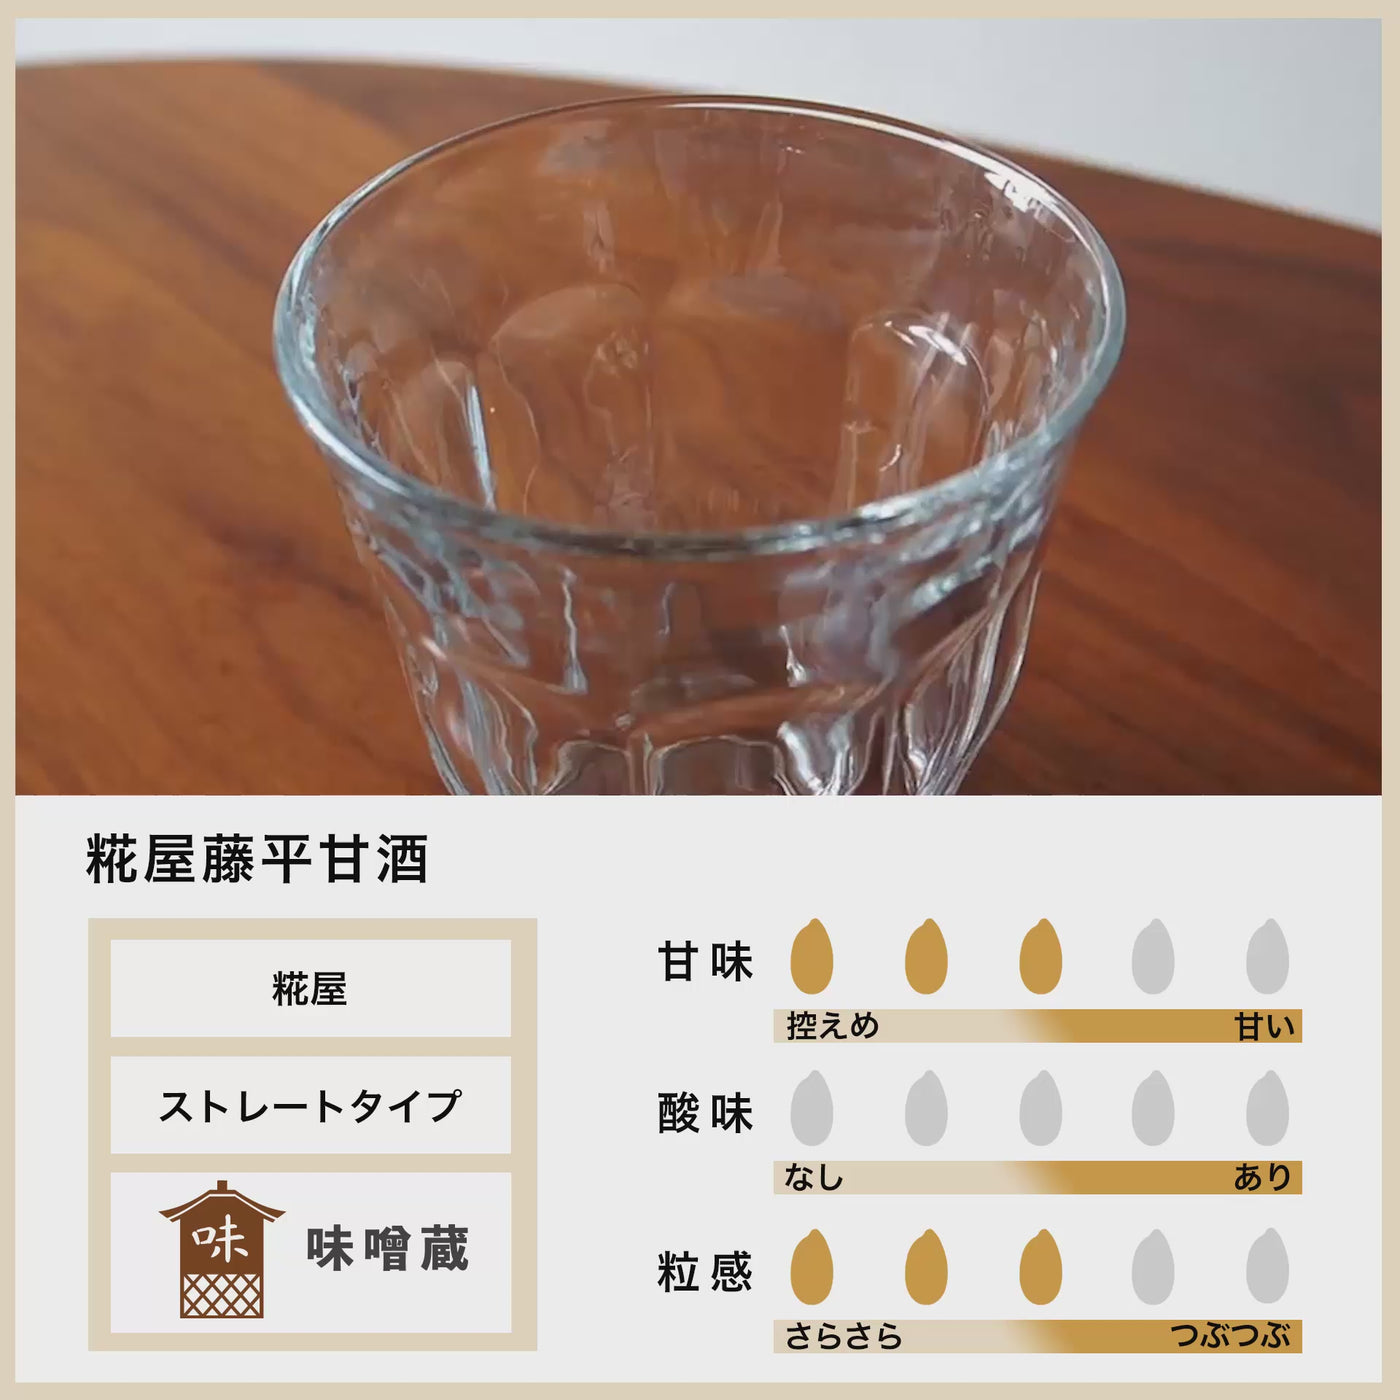 【まとめ買い】糀屋藤平甘酒 720ml 6本セット